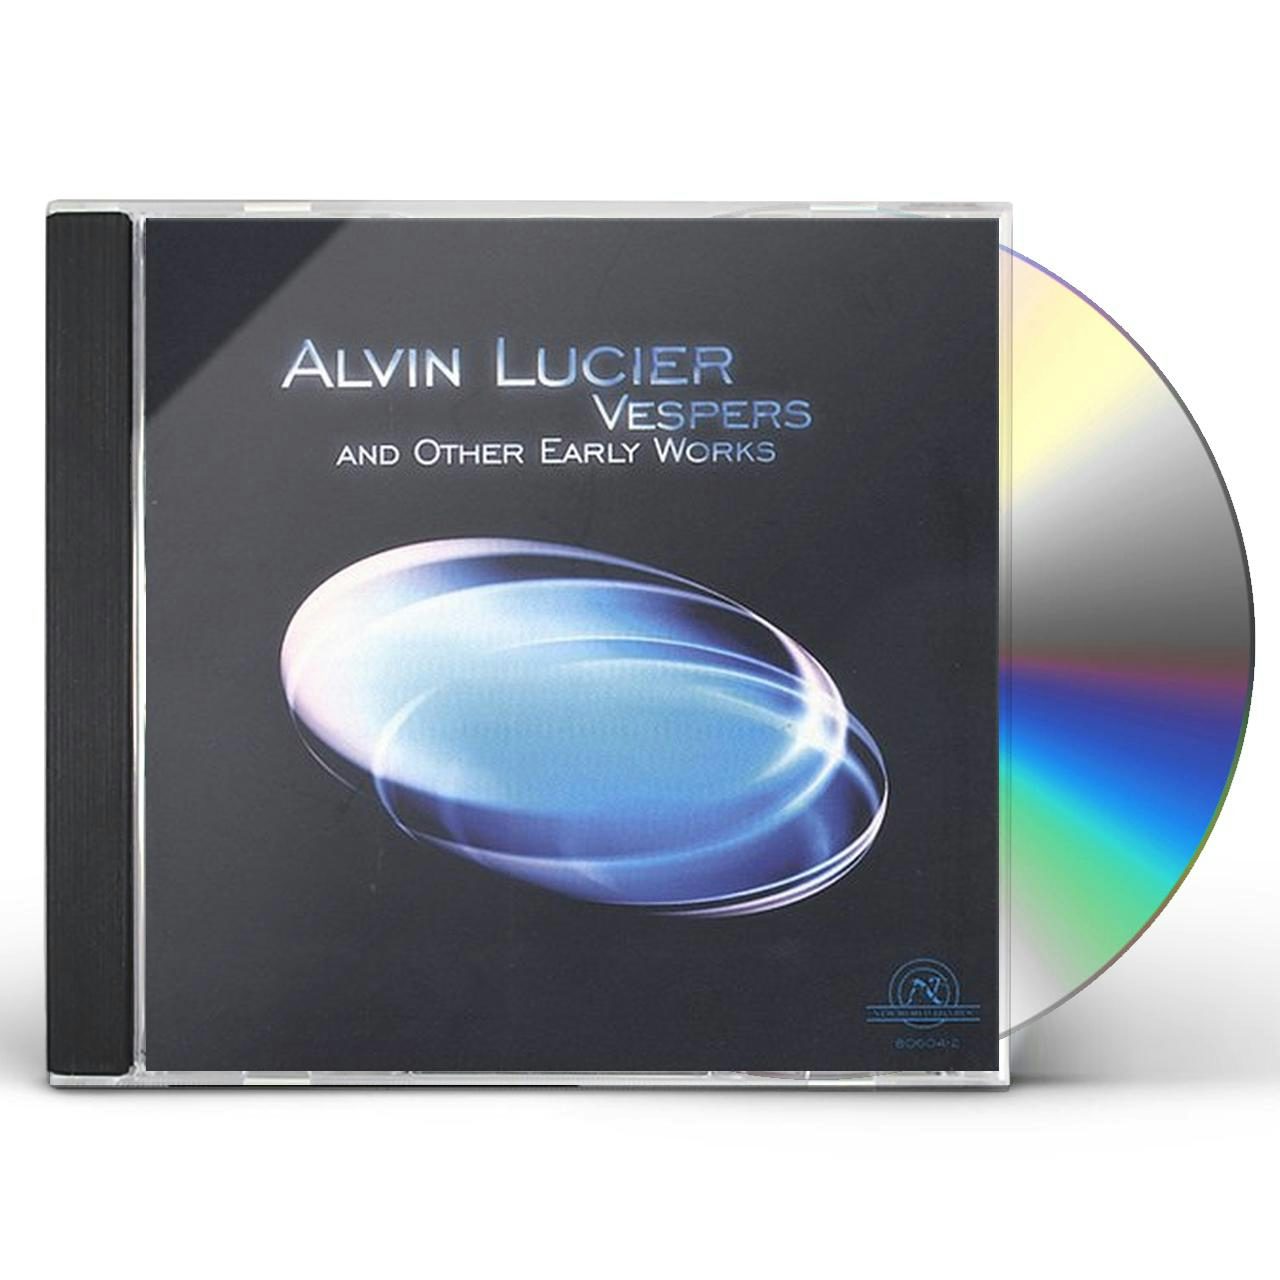 ラッピング無料】 ALVIN LUCIER オリジナルレコード その他 - www